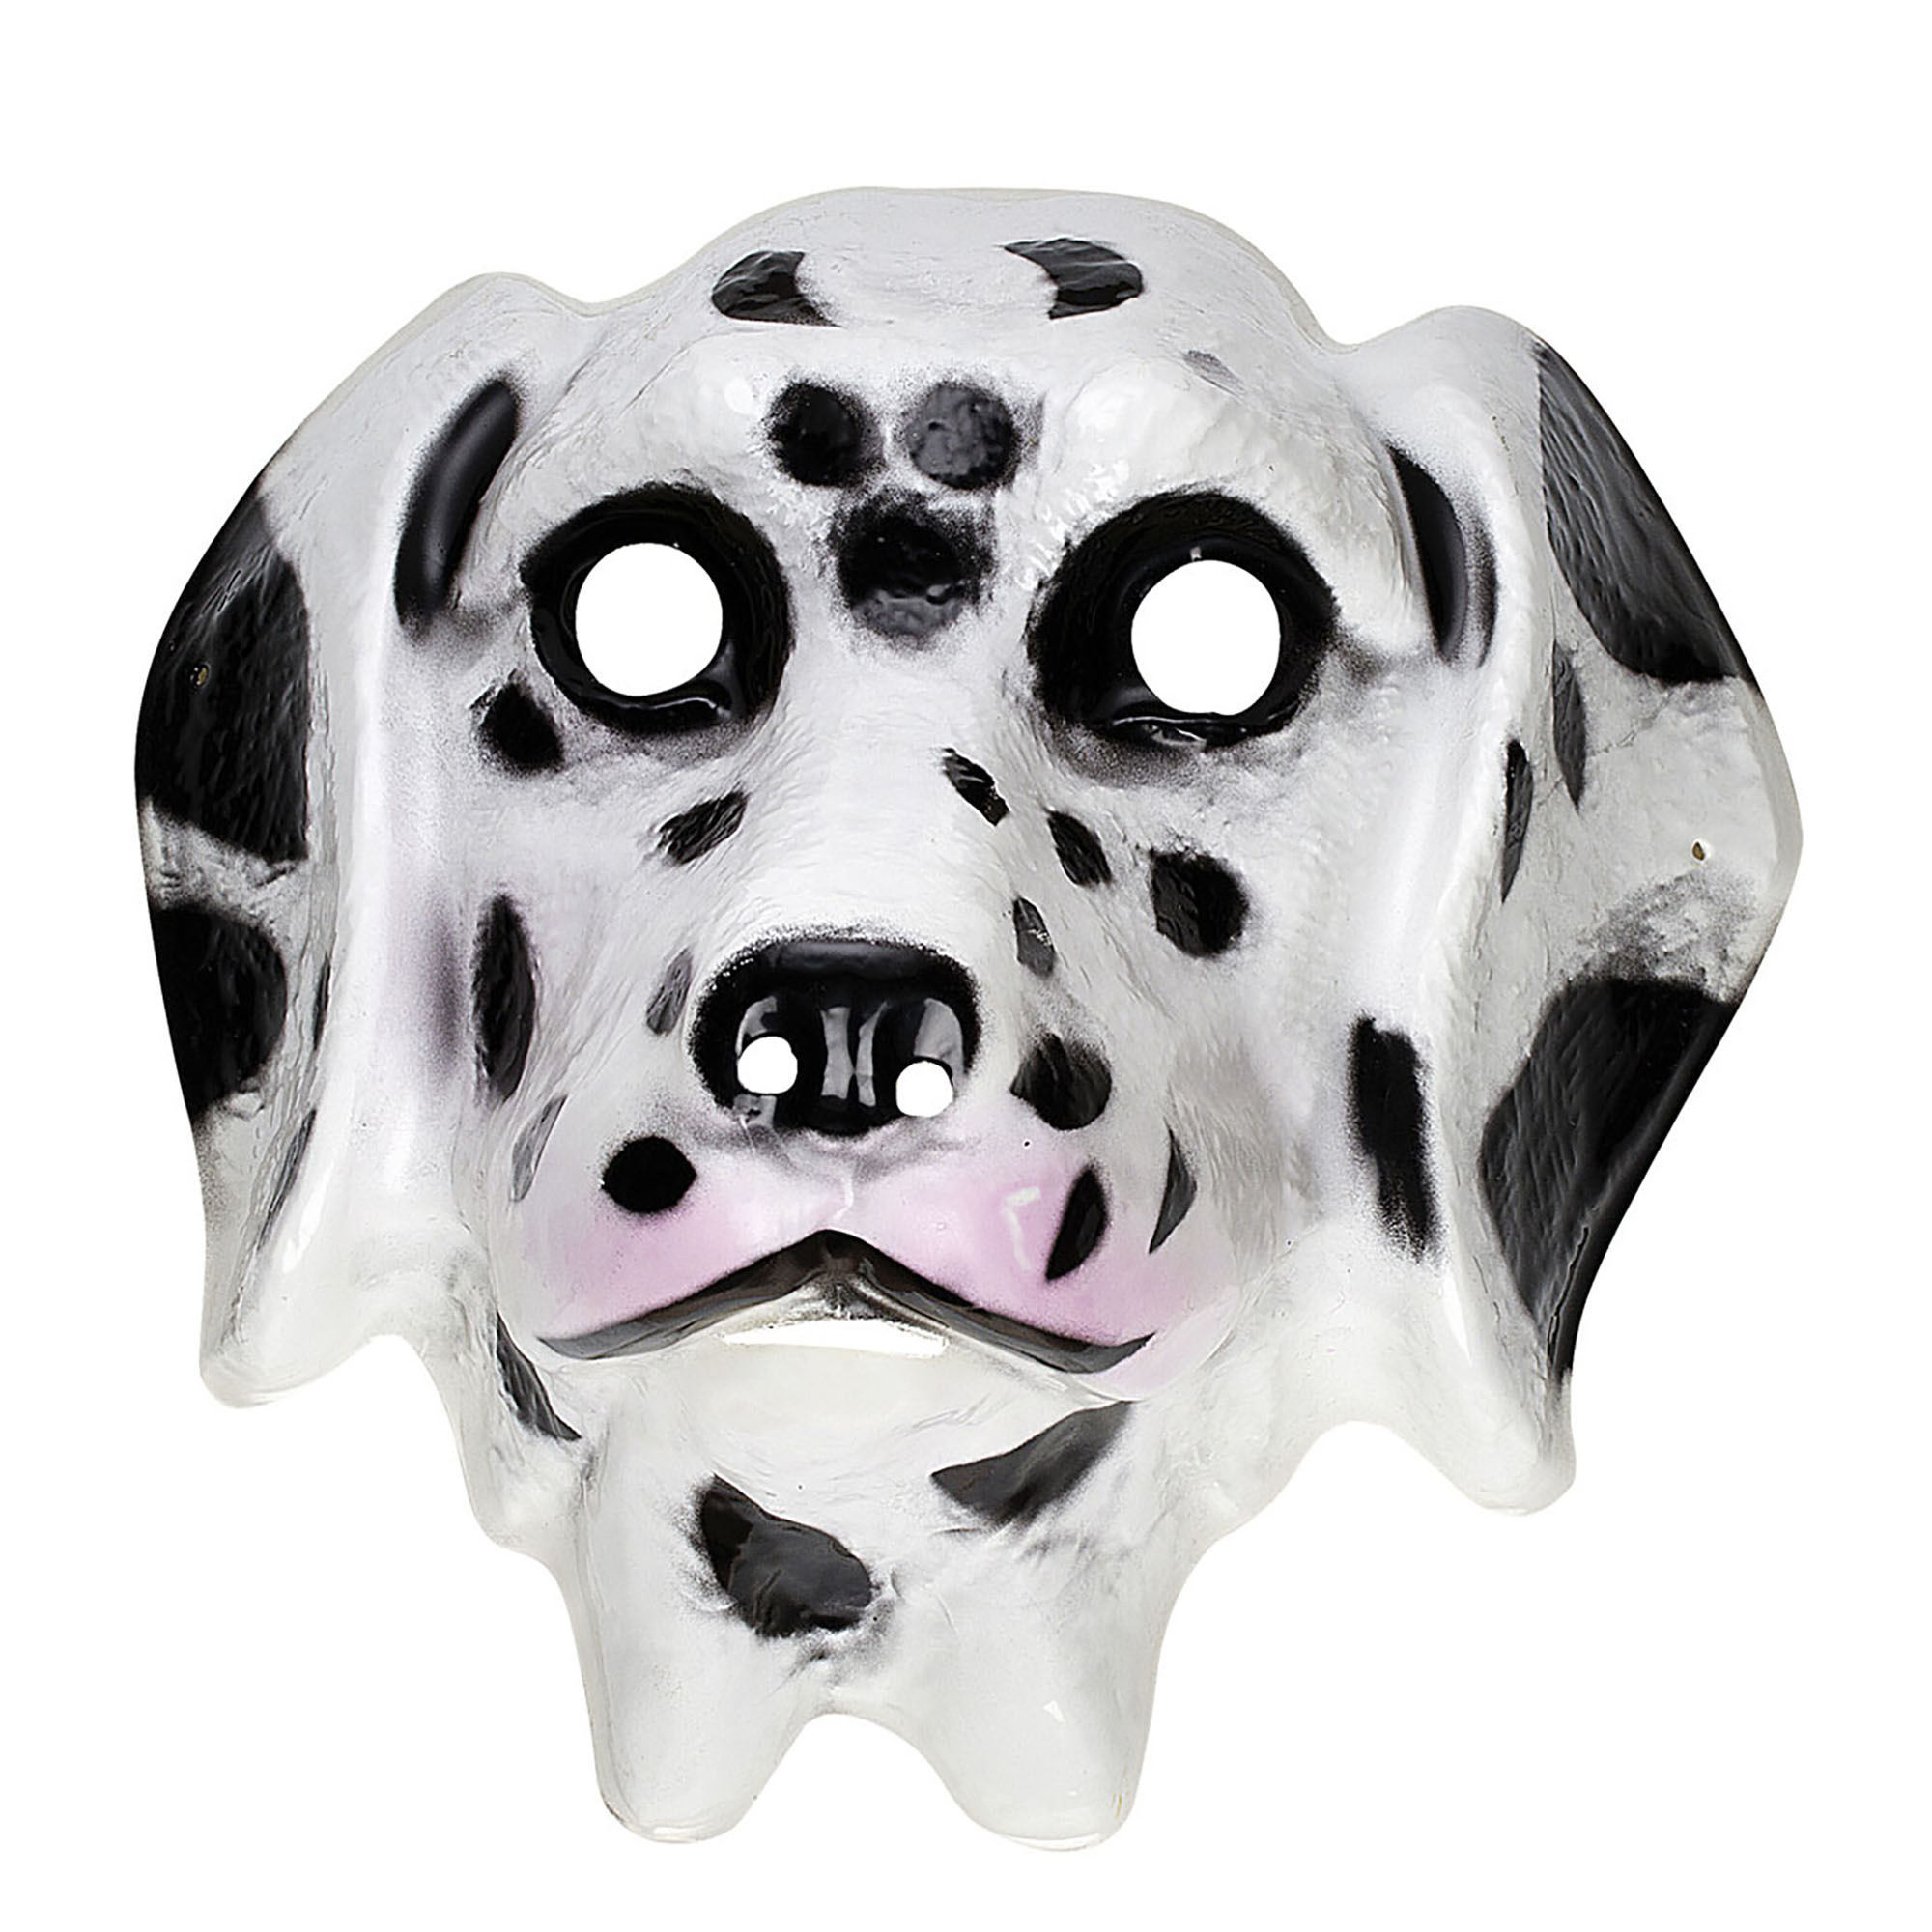 Plastic kinder masker dalmatier hond